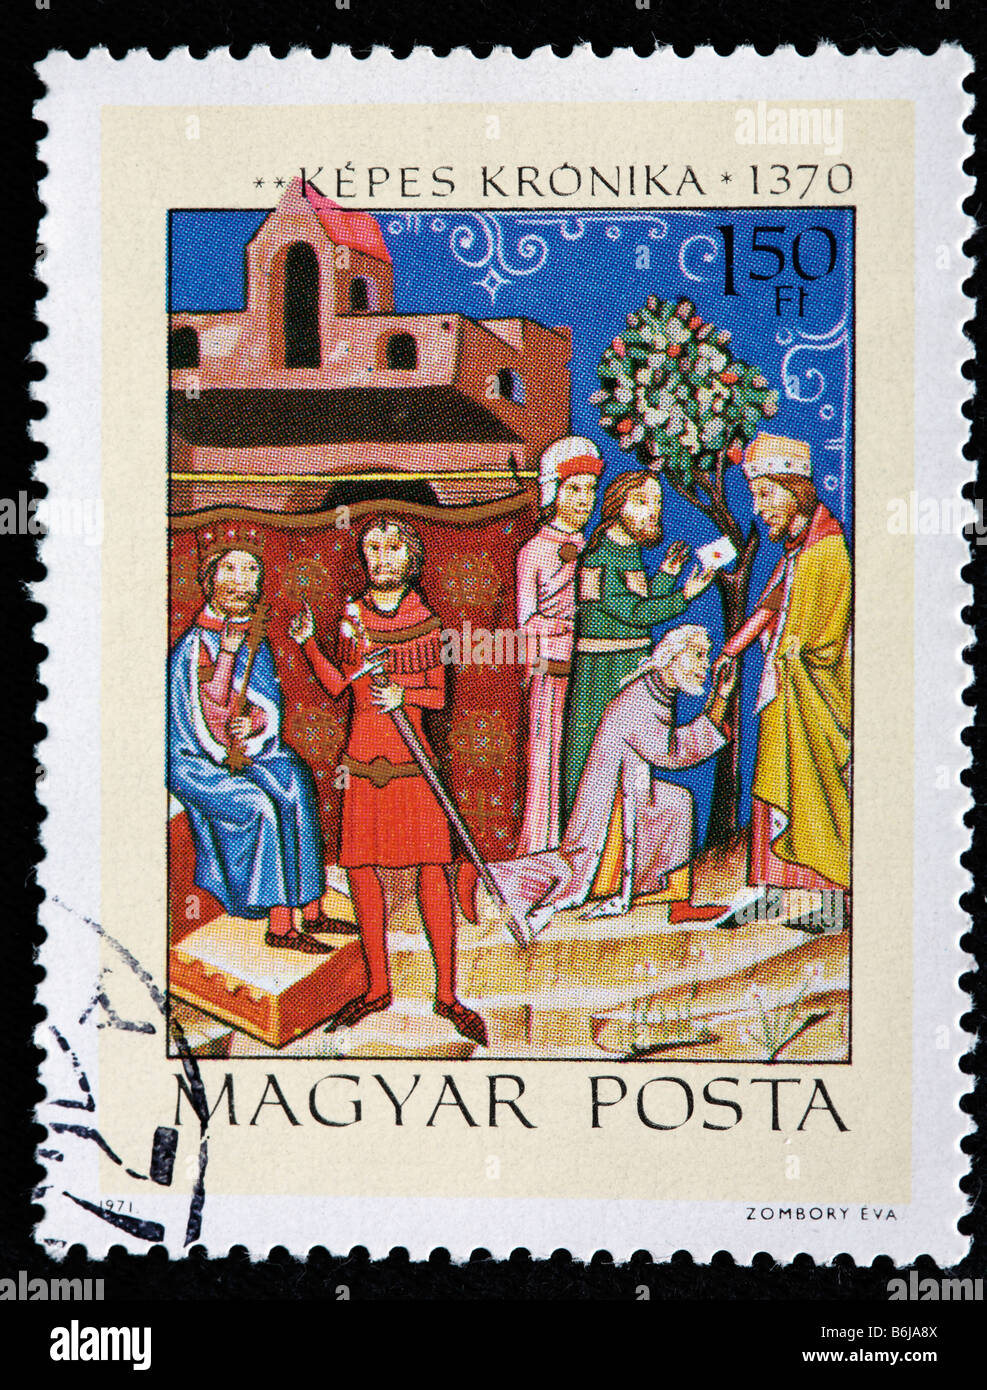 Kepes kronika (Vienne, Chronica Picta chronique illuminé, Chronica de gestis Hungarorum) (1370), timbre-poste, Hongrie, 1971 Banque D'Images